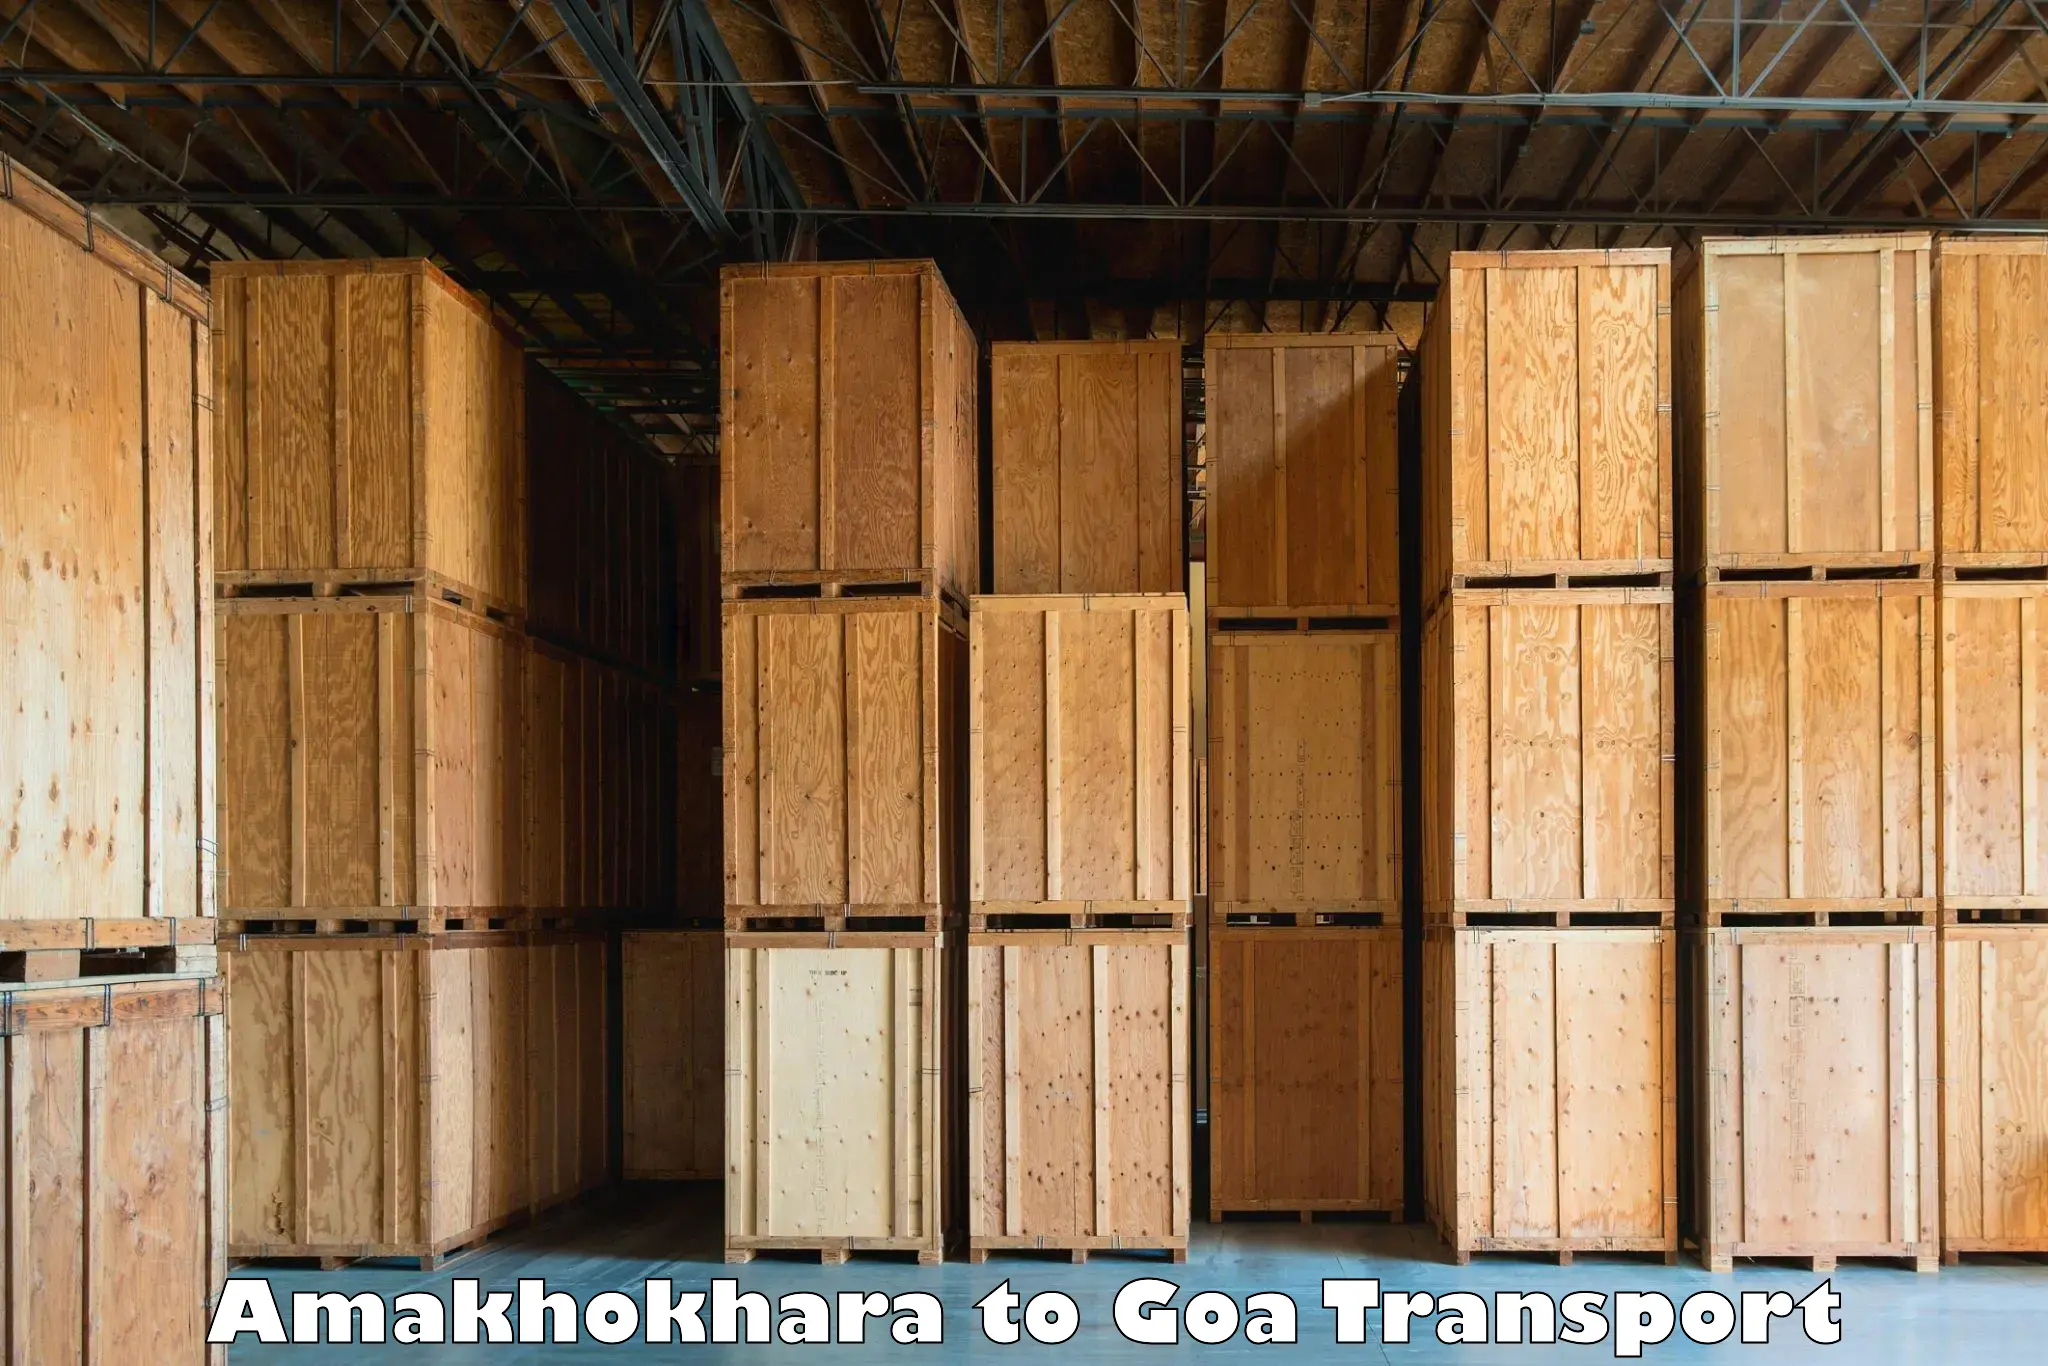 Transport shared services Amakhokhara to Goa University